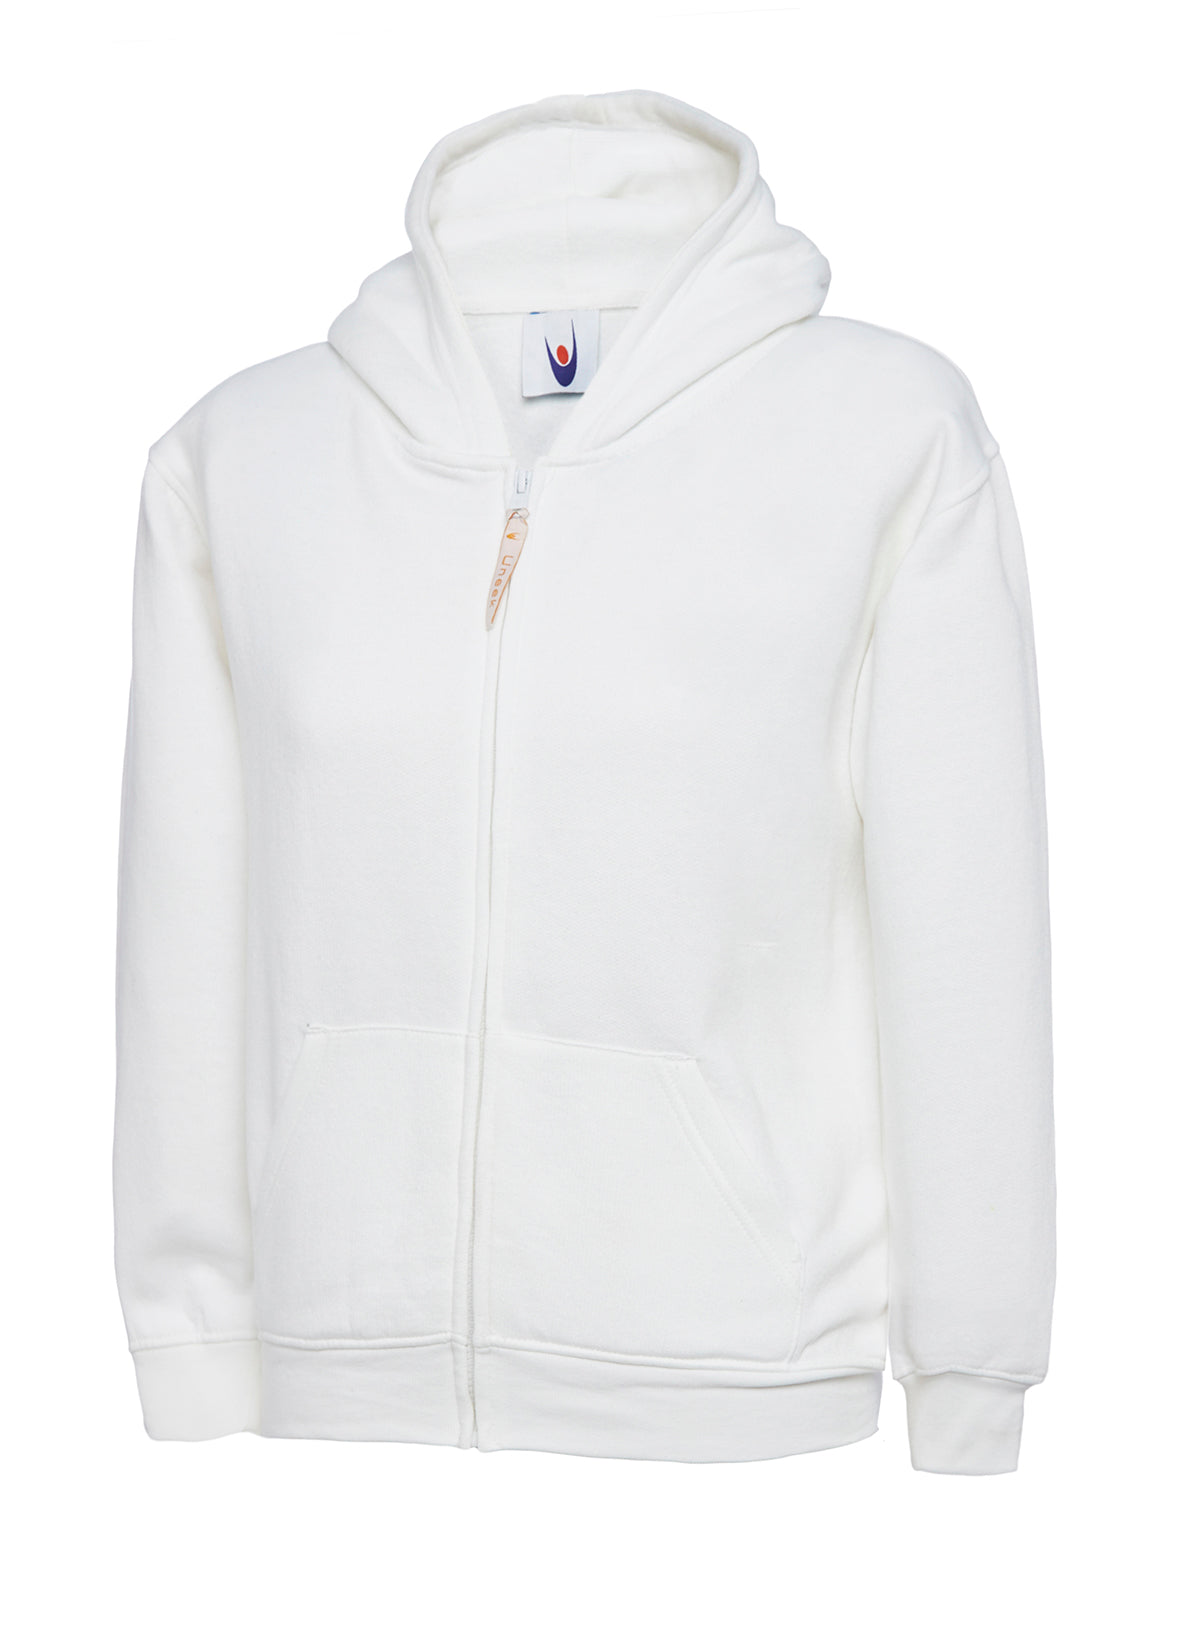 Uneek Childrens Classic Full Zip Hooded Sweatshirt UC506 - White